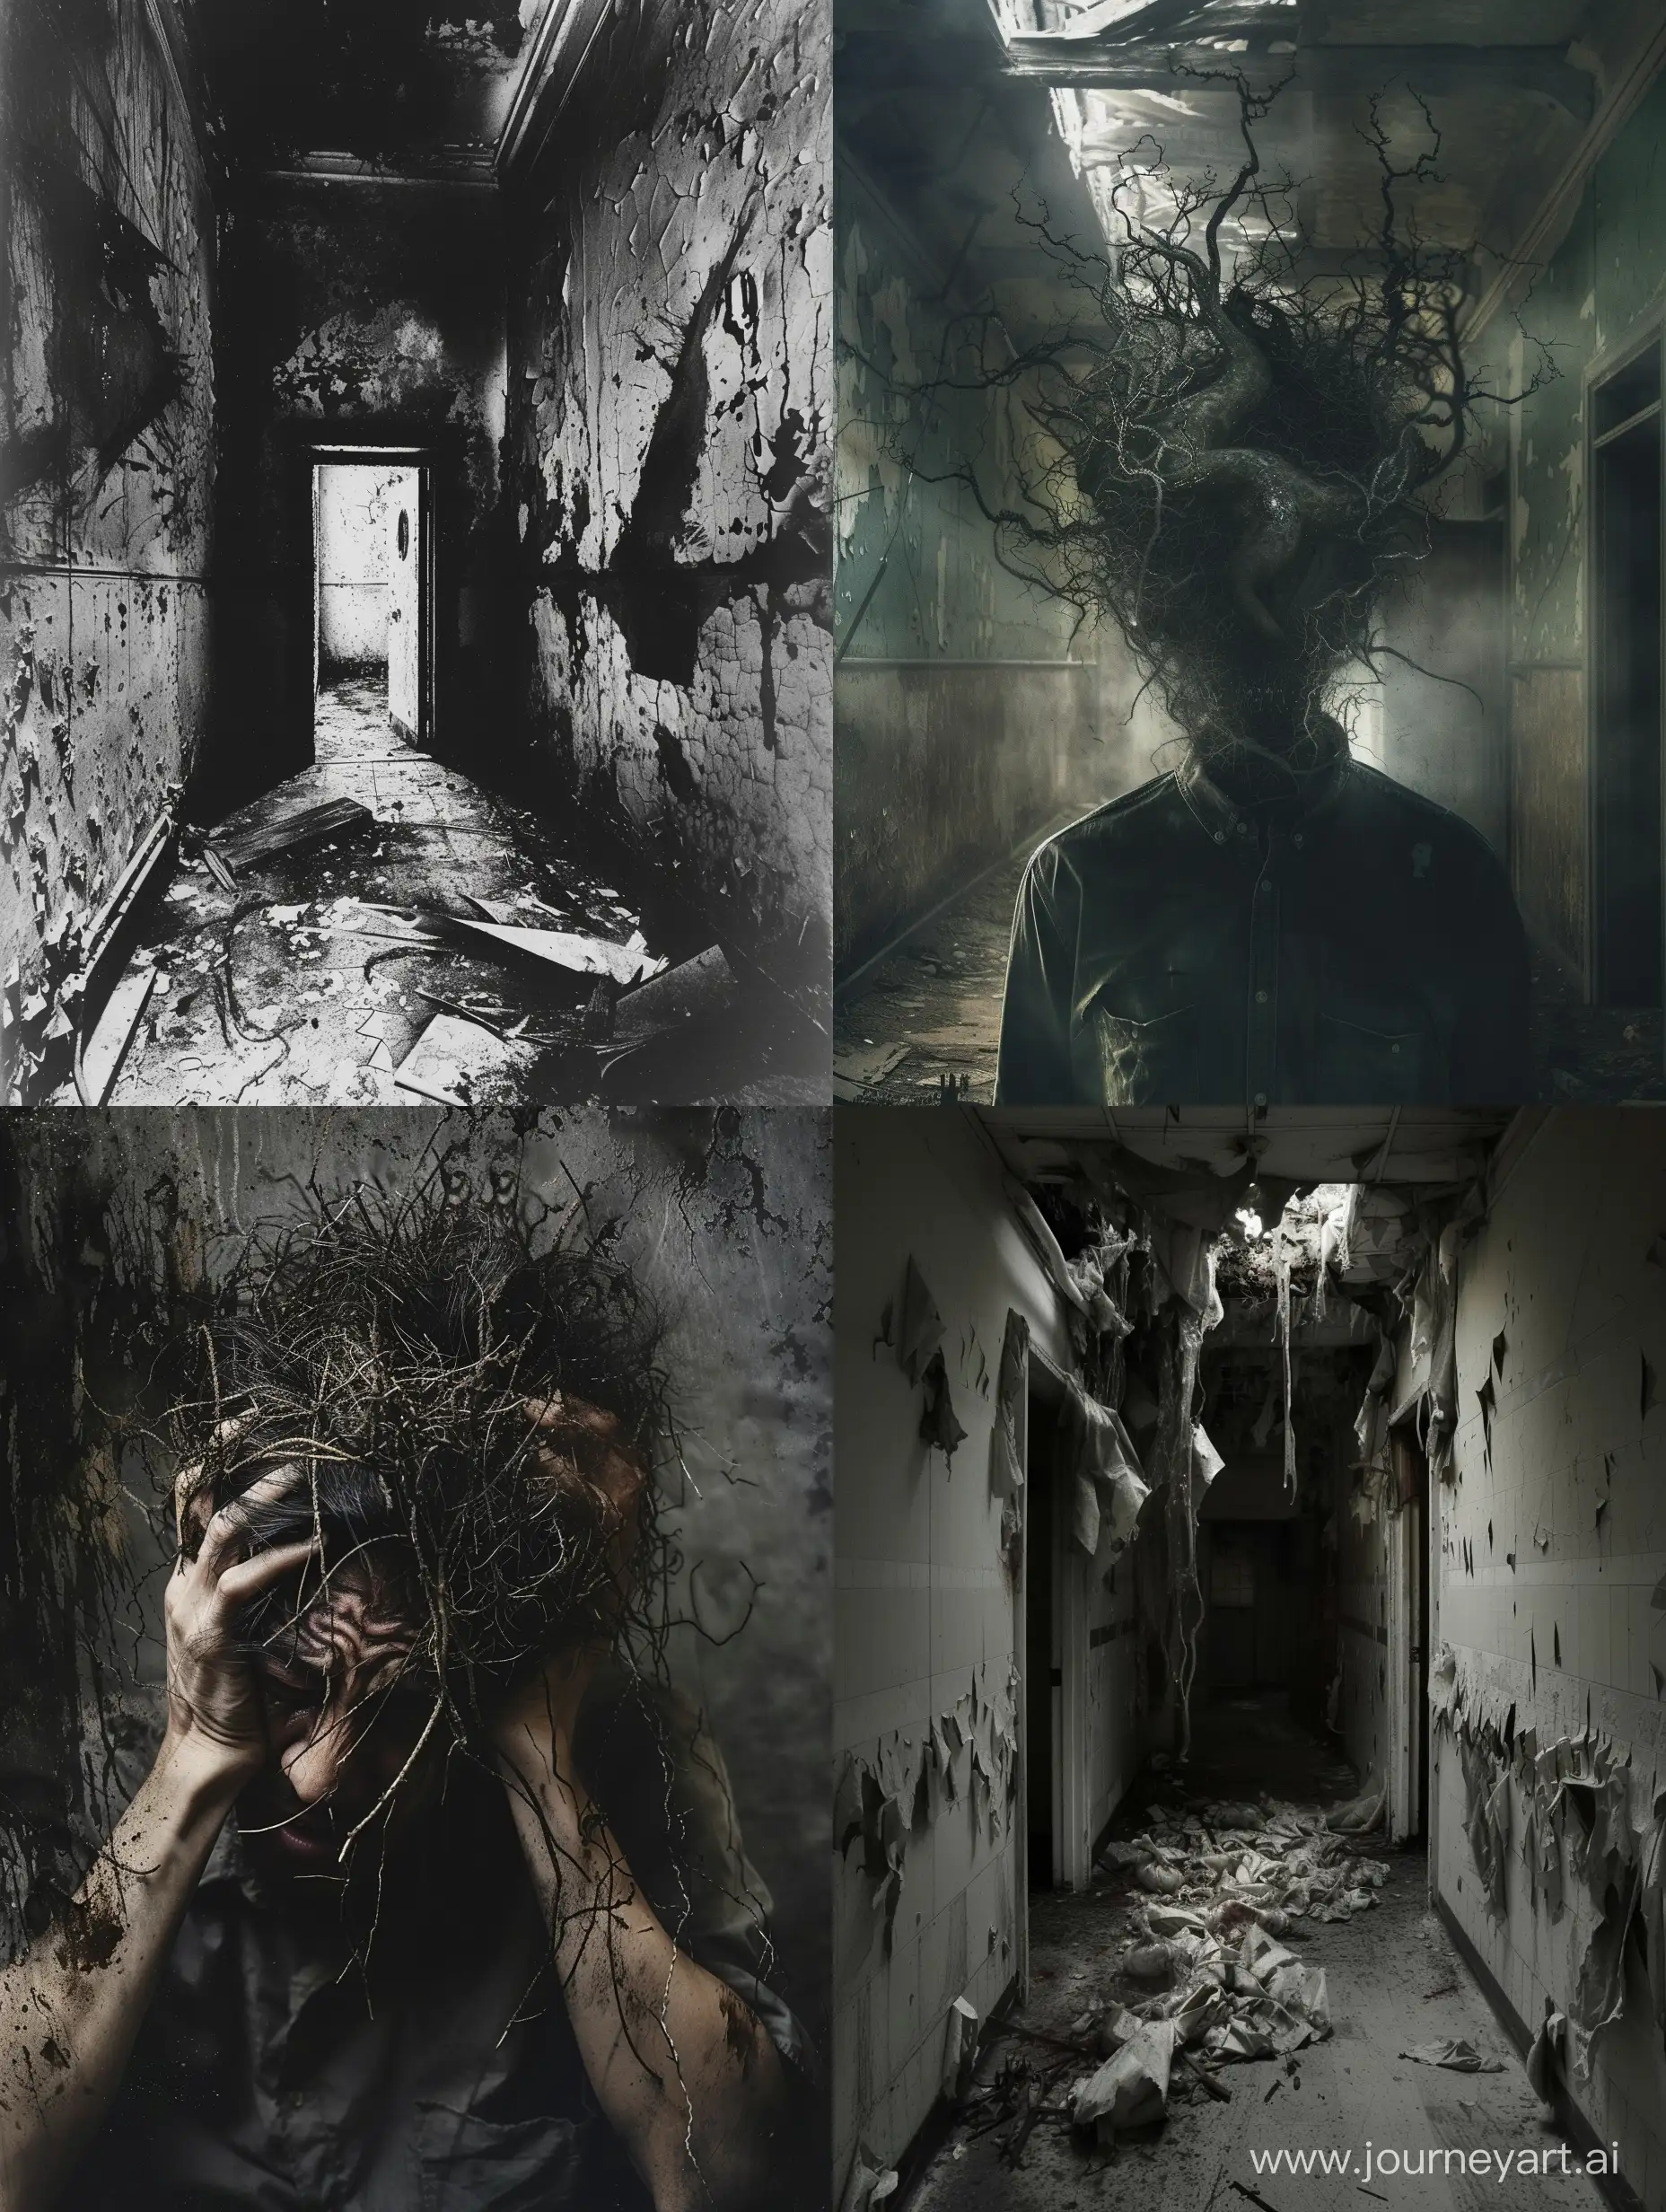 The Schizophrenic Artist, unraveling sanity, Abandoned Asylum, Takashi Miike's Shocking and Twisted Imagery, psychological warfare, psychological horror, taken on provia